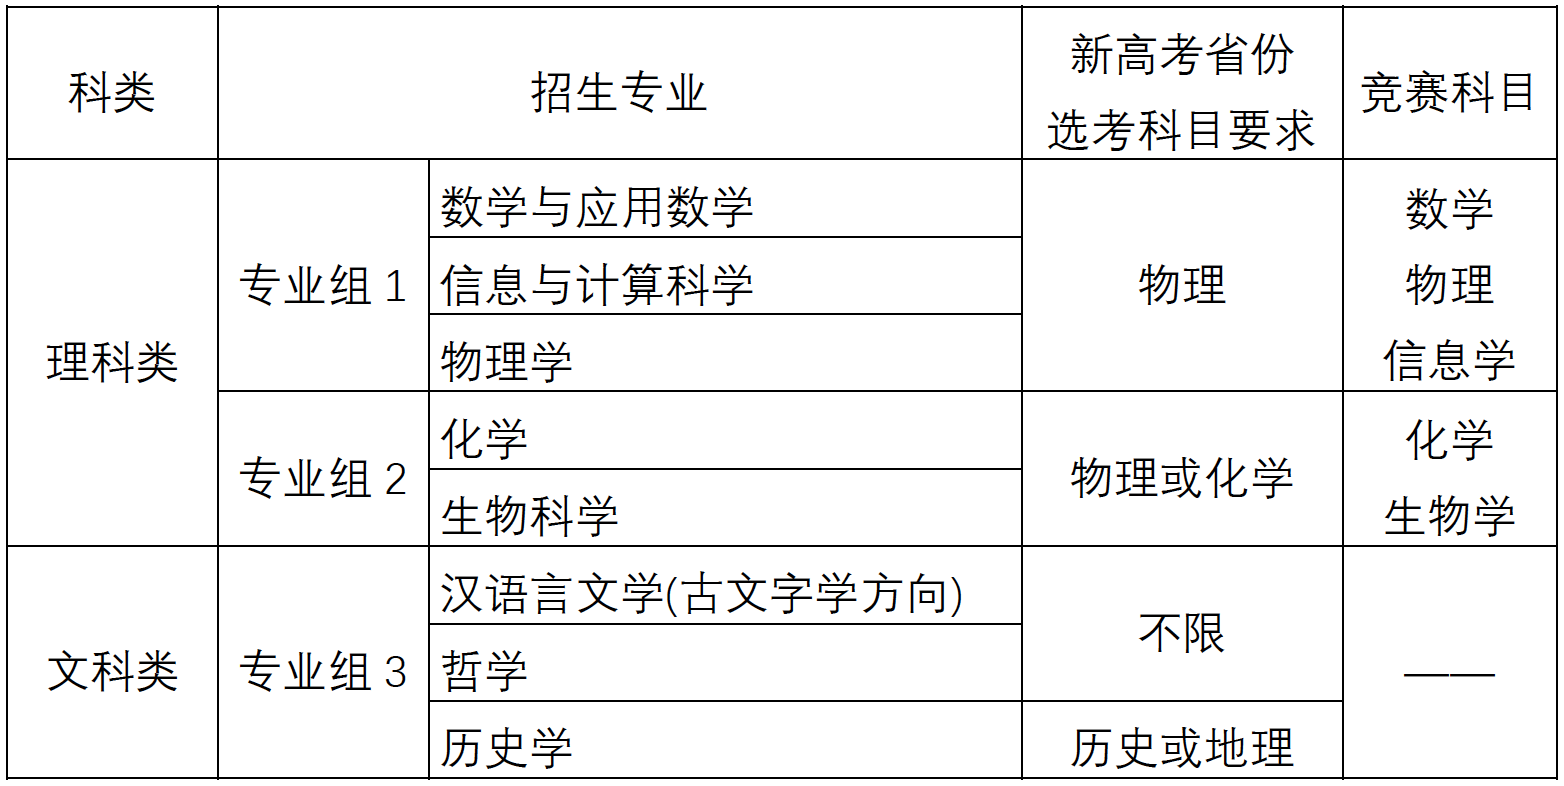 2020年南京大学强基计划招生简章(招生专业-报名条件)